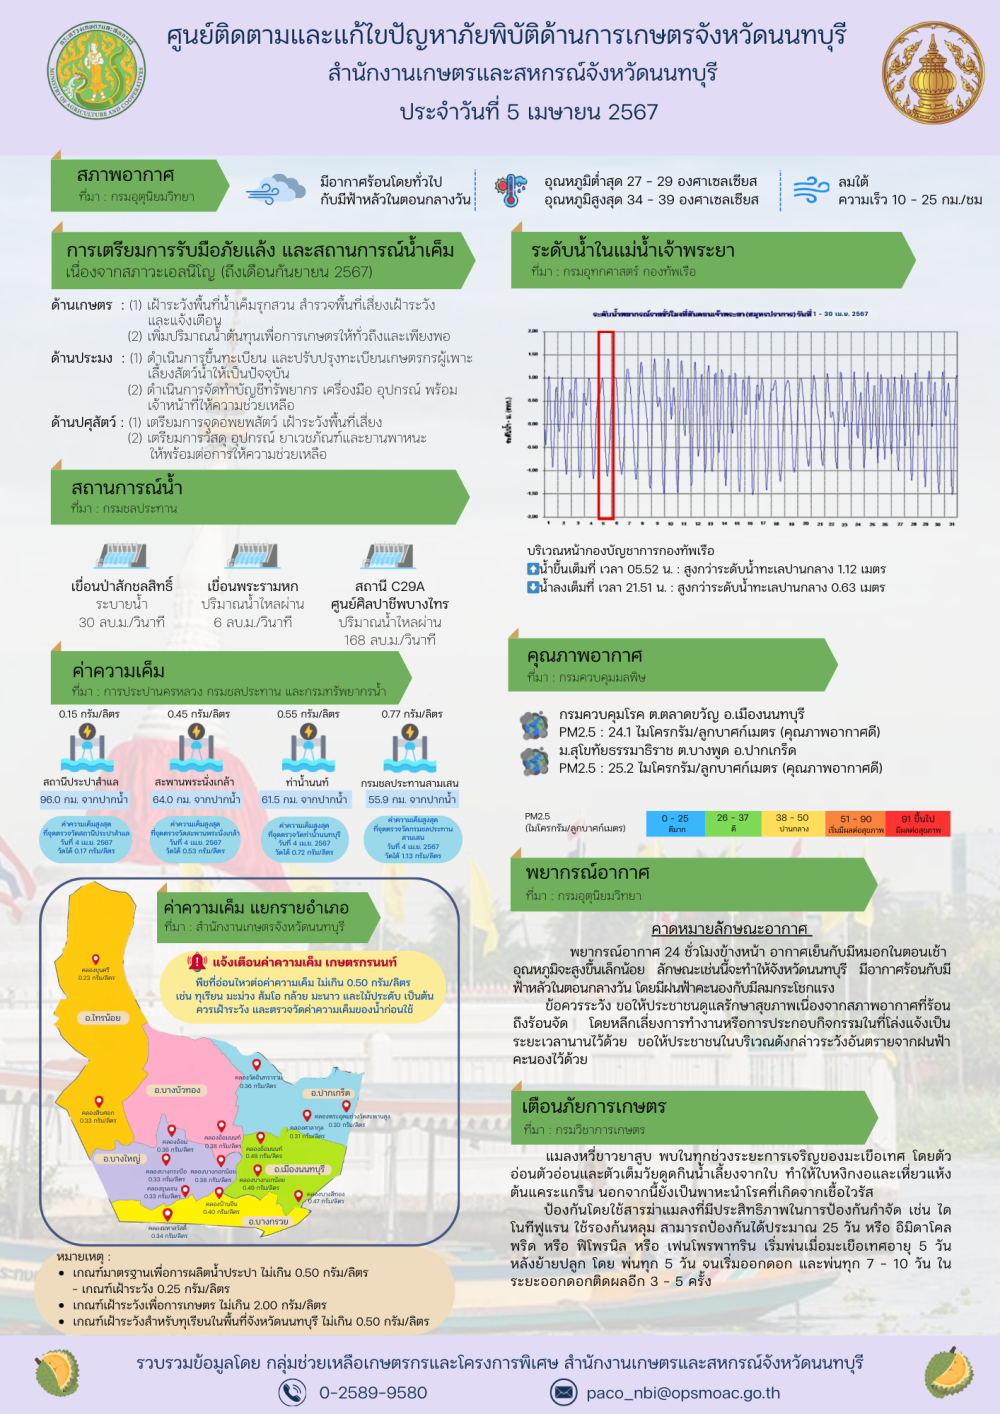 รายงานการติดตามและการแก้ไขปัญหาภัยพิบัติด้านการเกษตรจังหวัดนนทบุรี